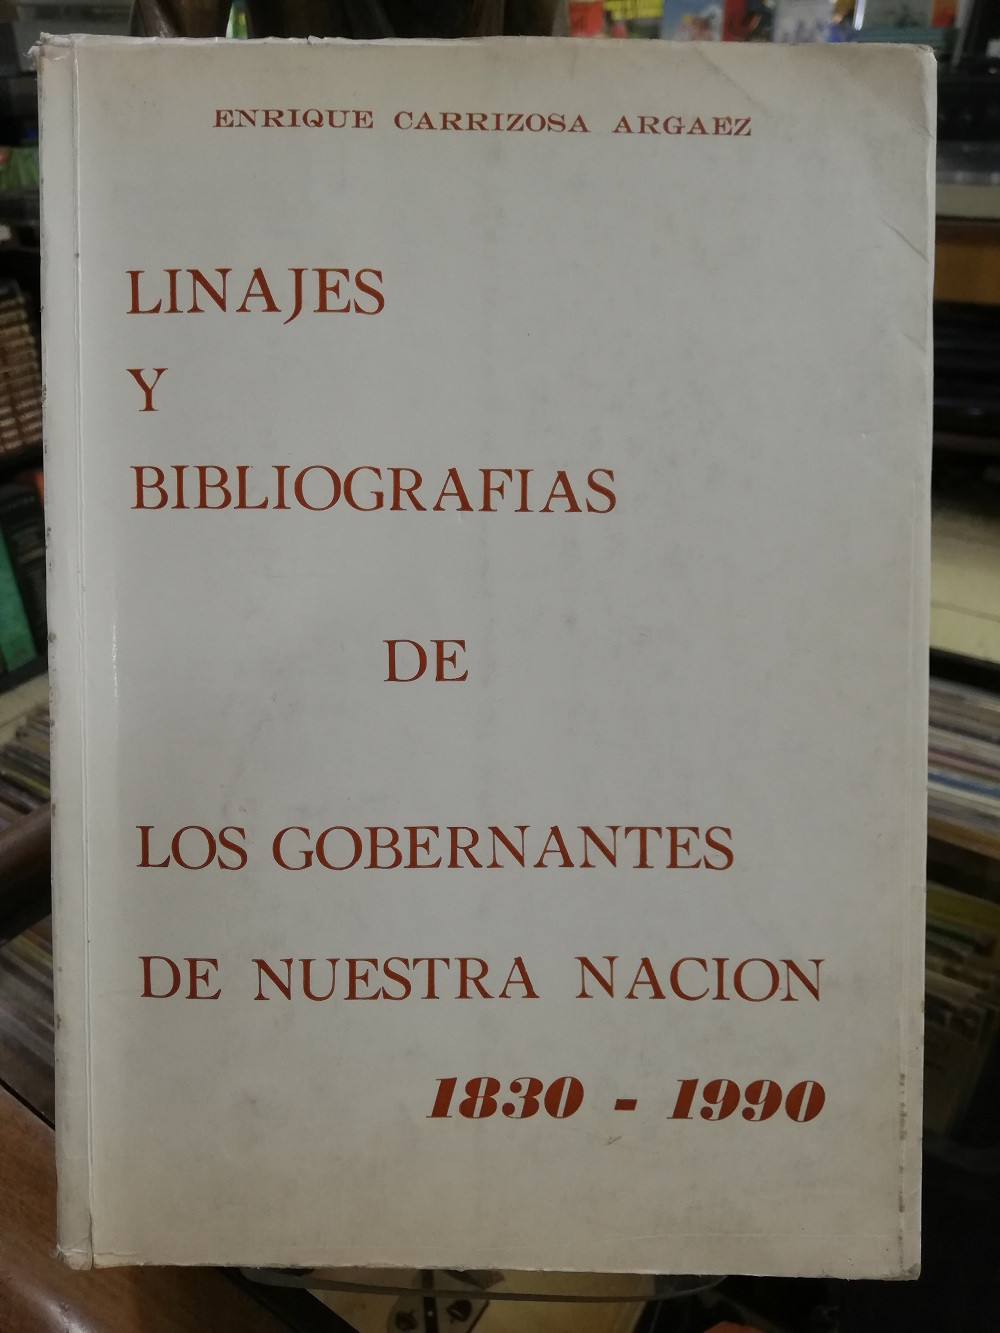 Imagen LINAJES Y BIBLIOGRAFÍAS DE LOS GOBERNANTES DE NUESTRA NACIÓN 1830-1990 - ENRIQUE CARRIZOSA ARGAEZ